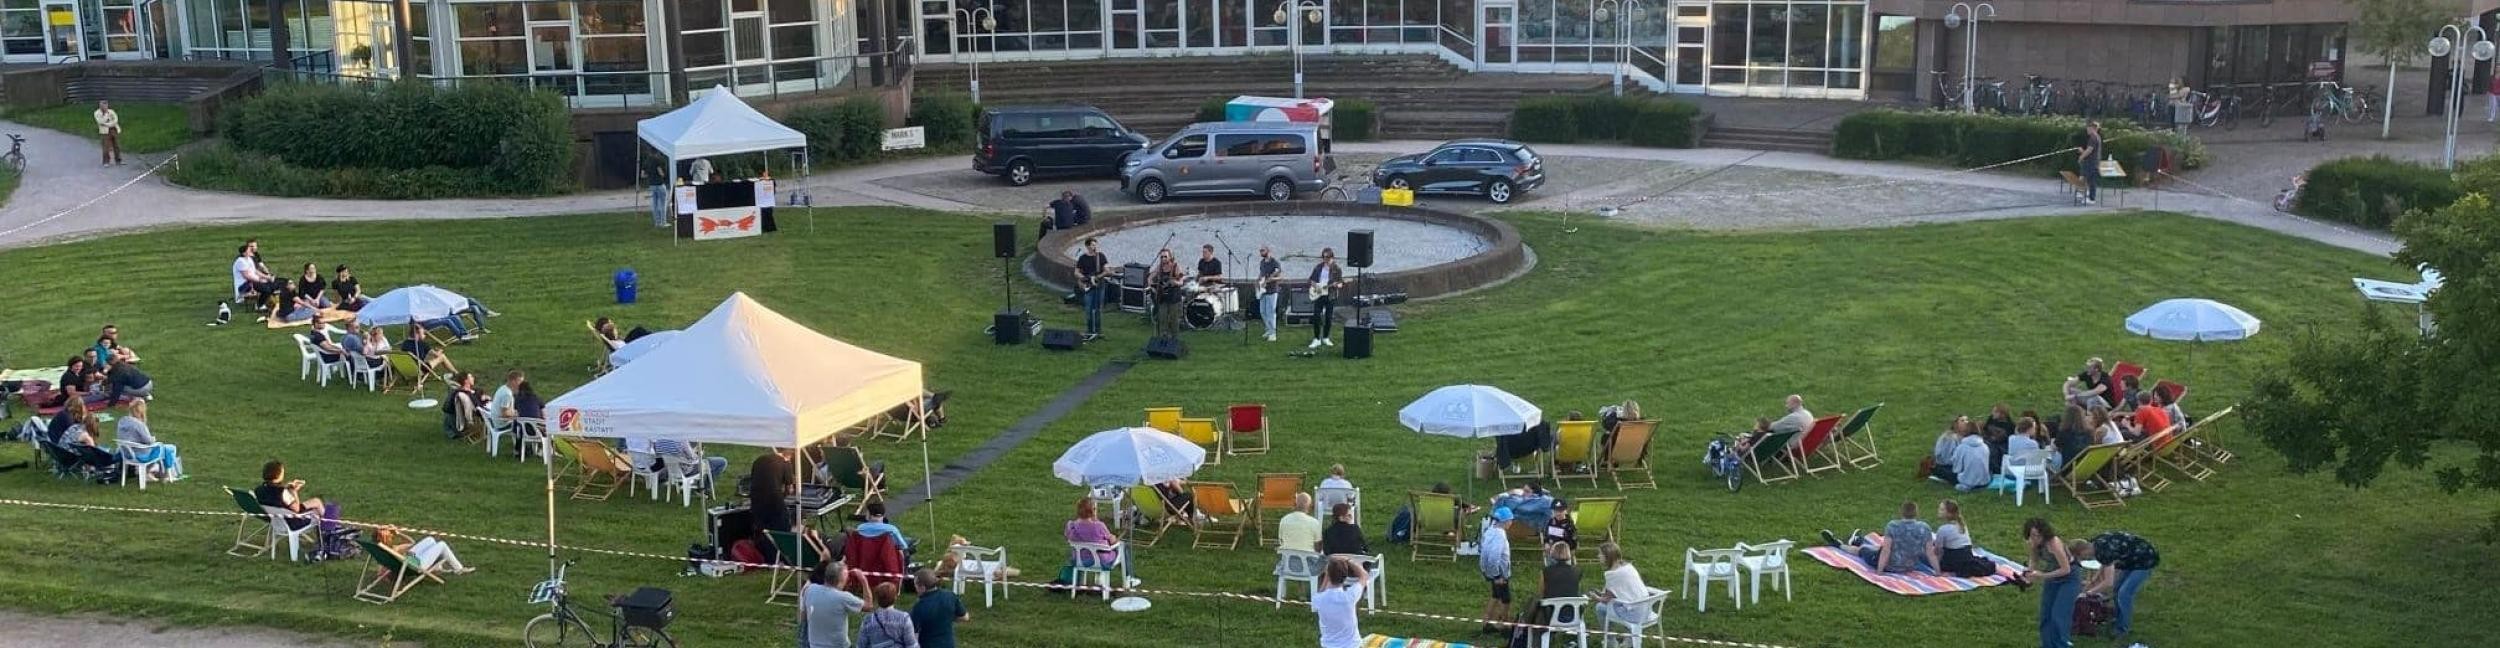 Murgchillout Rastatt - Auf einer Wiese sitzen viele Menschen auf Liegestühlen, davor spielt eine Band Musik, im Hintergrund Gebäude